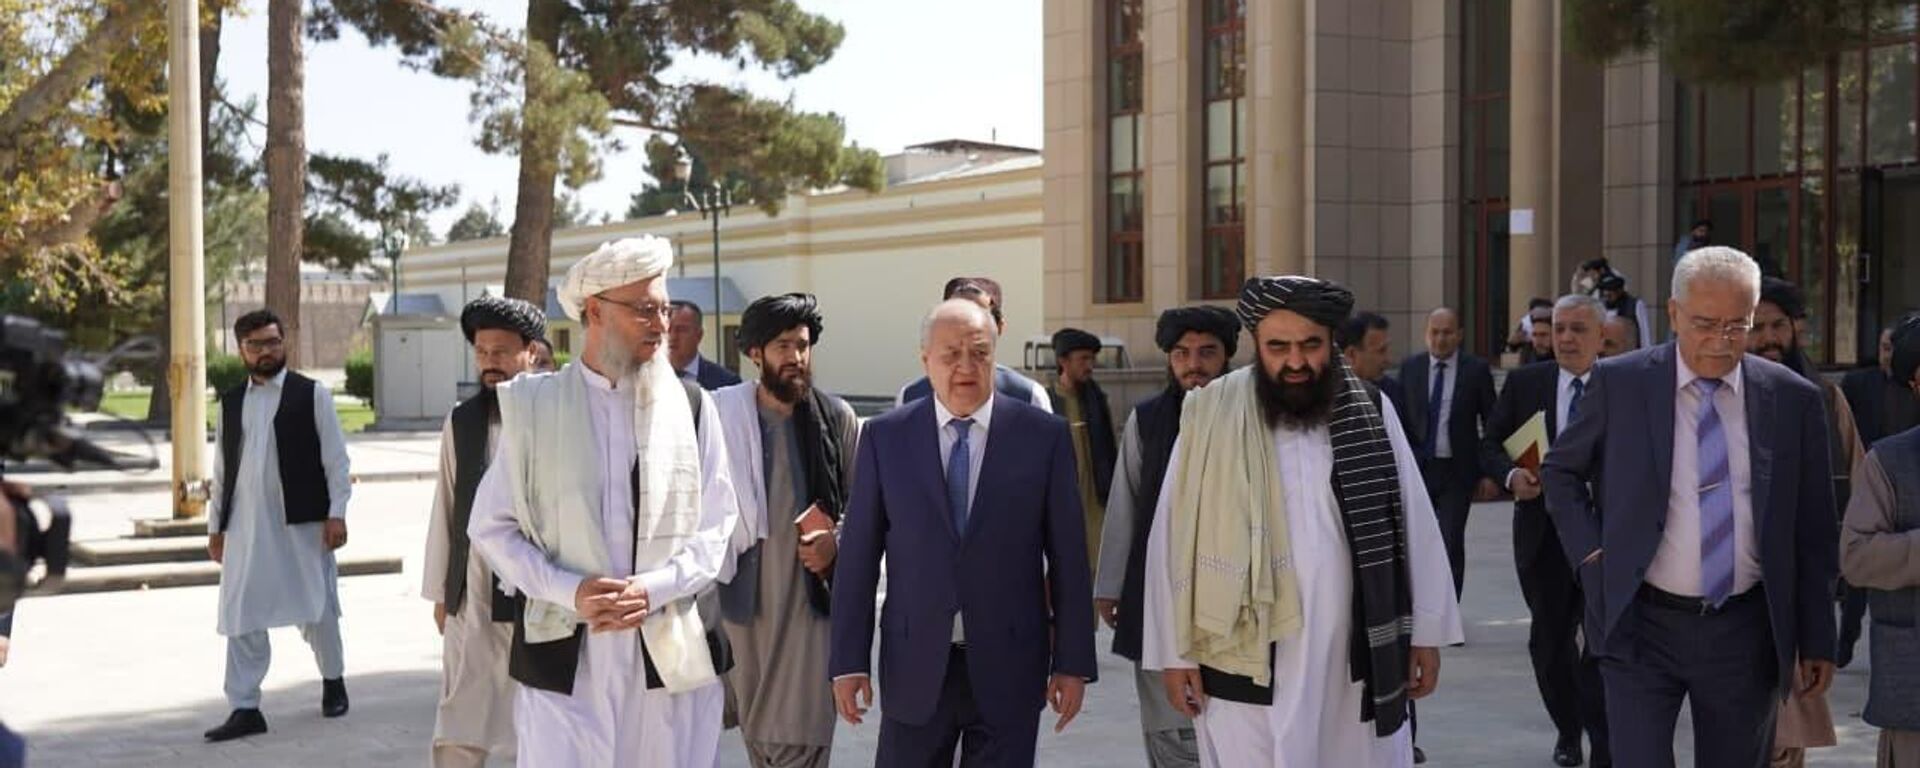 Министр иностранных дел Узбекистана Абдулализ Камилов посетил Кабул с рабочим визитом - Sputnik Узбекистан, 1920, 07.10.2021